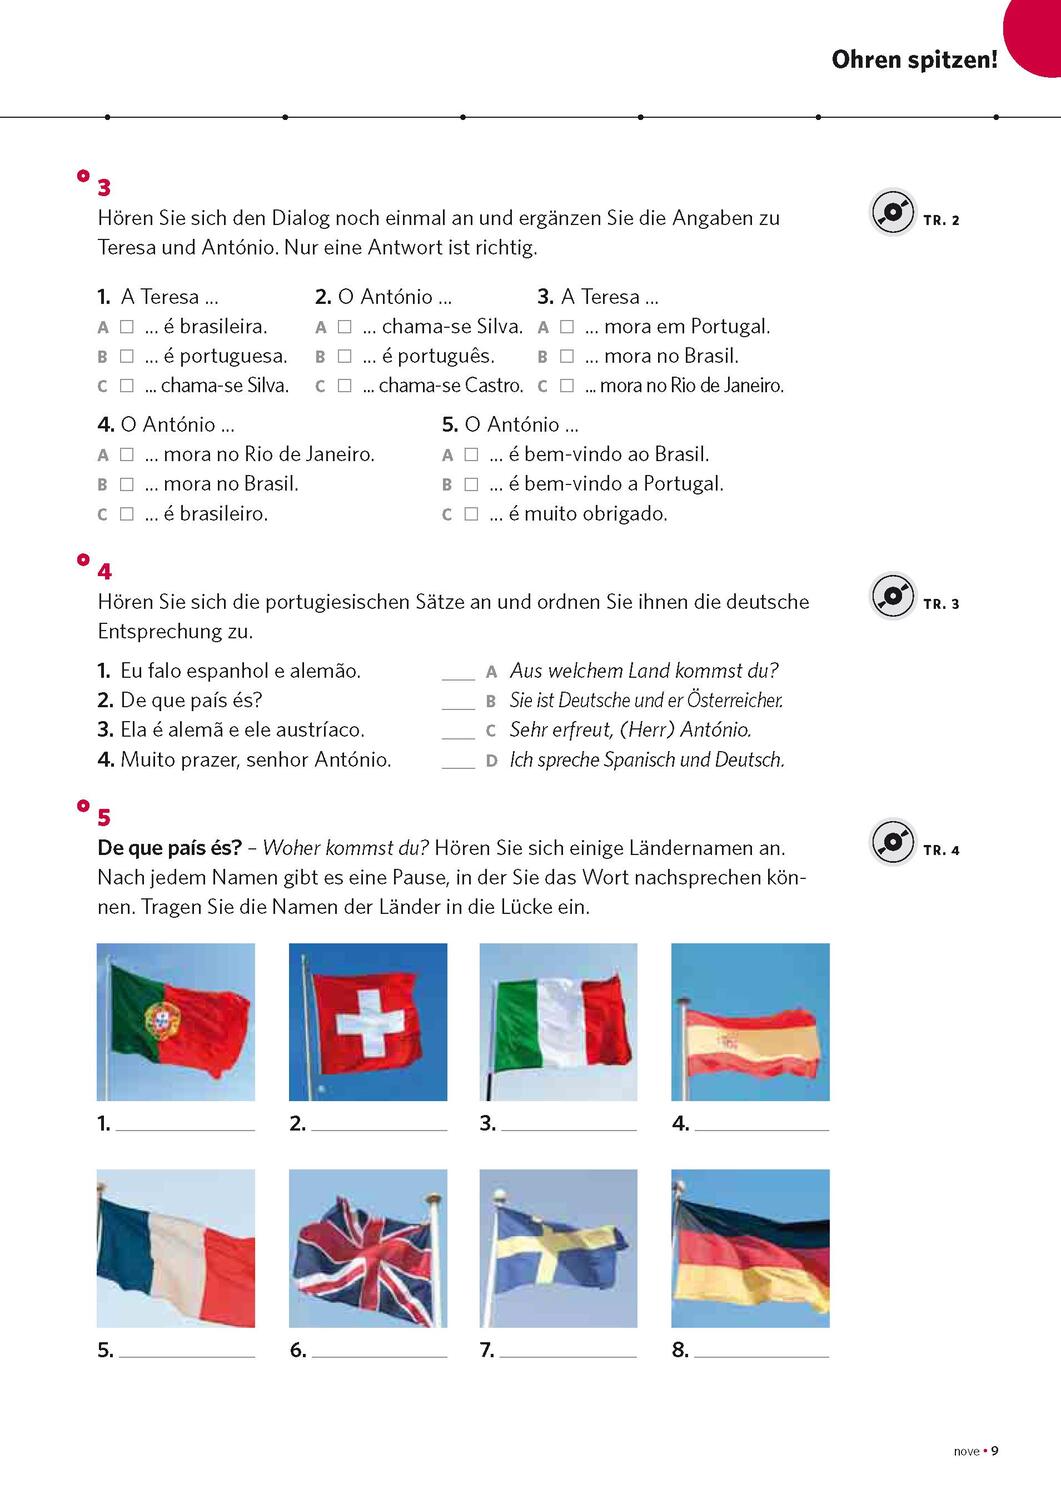 Bild: 9783125624092 | PONS Power-Sprachkurs Portugiesisch 1 | Taschenbuch | 208 S. | Deutsch